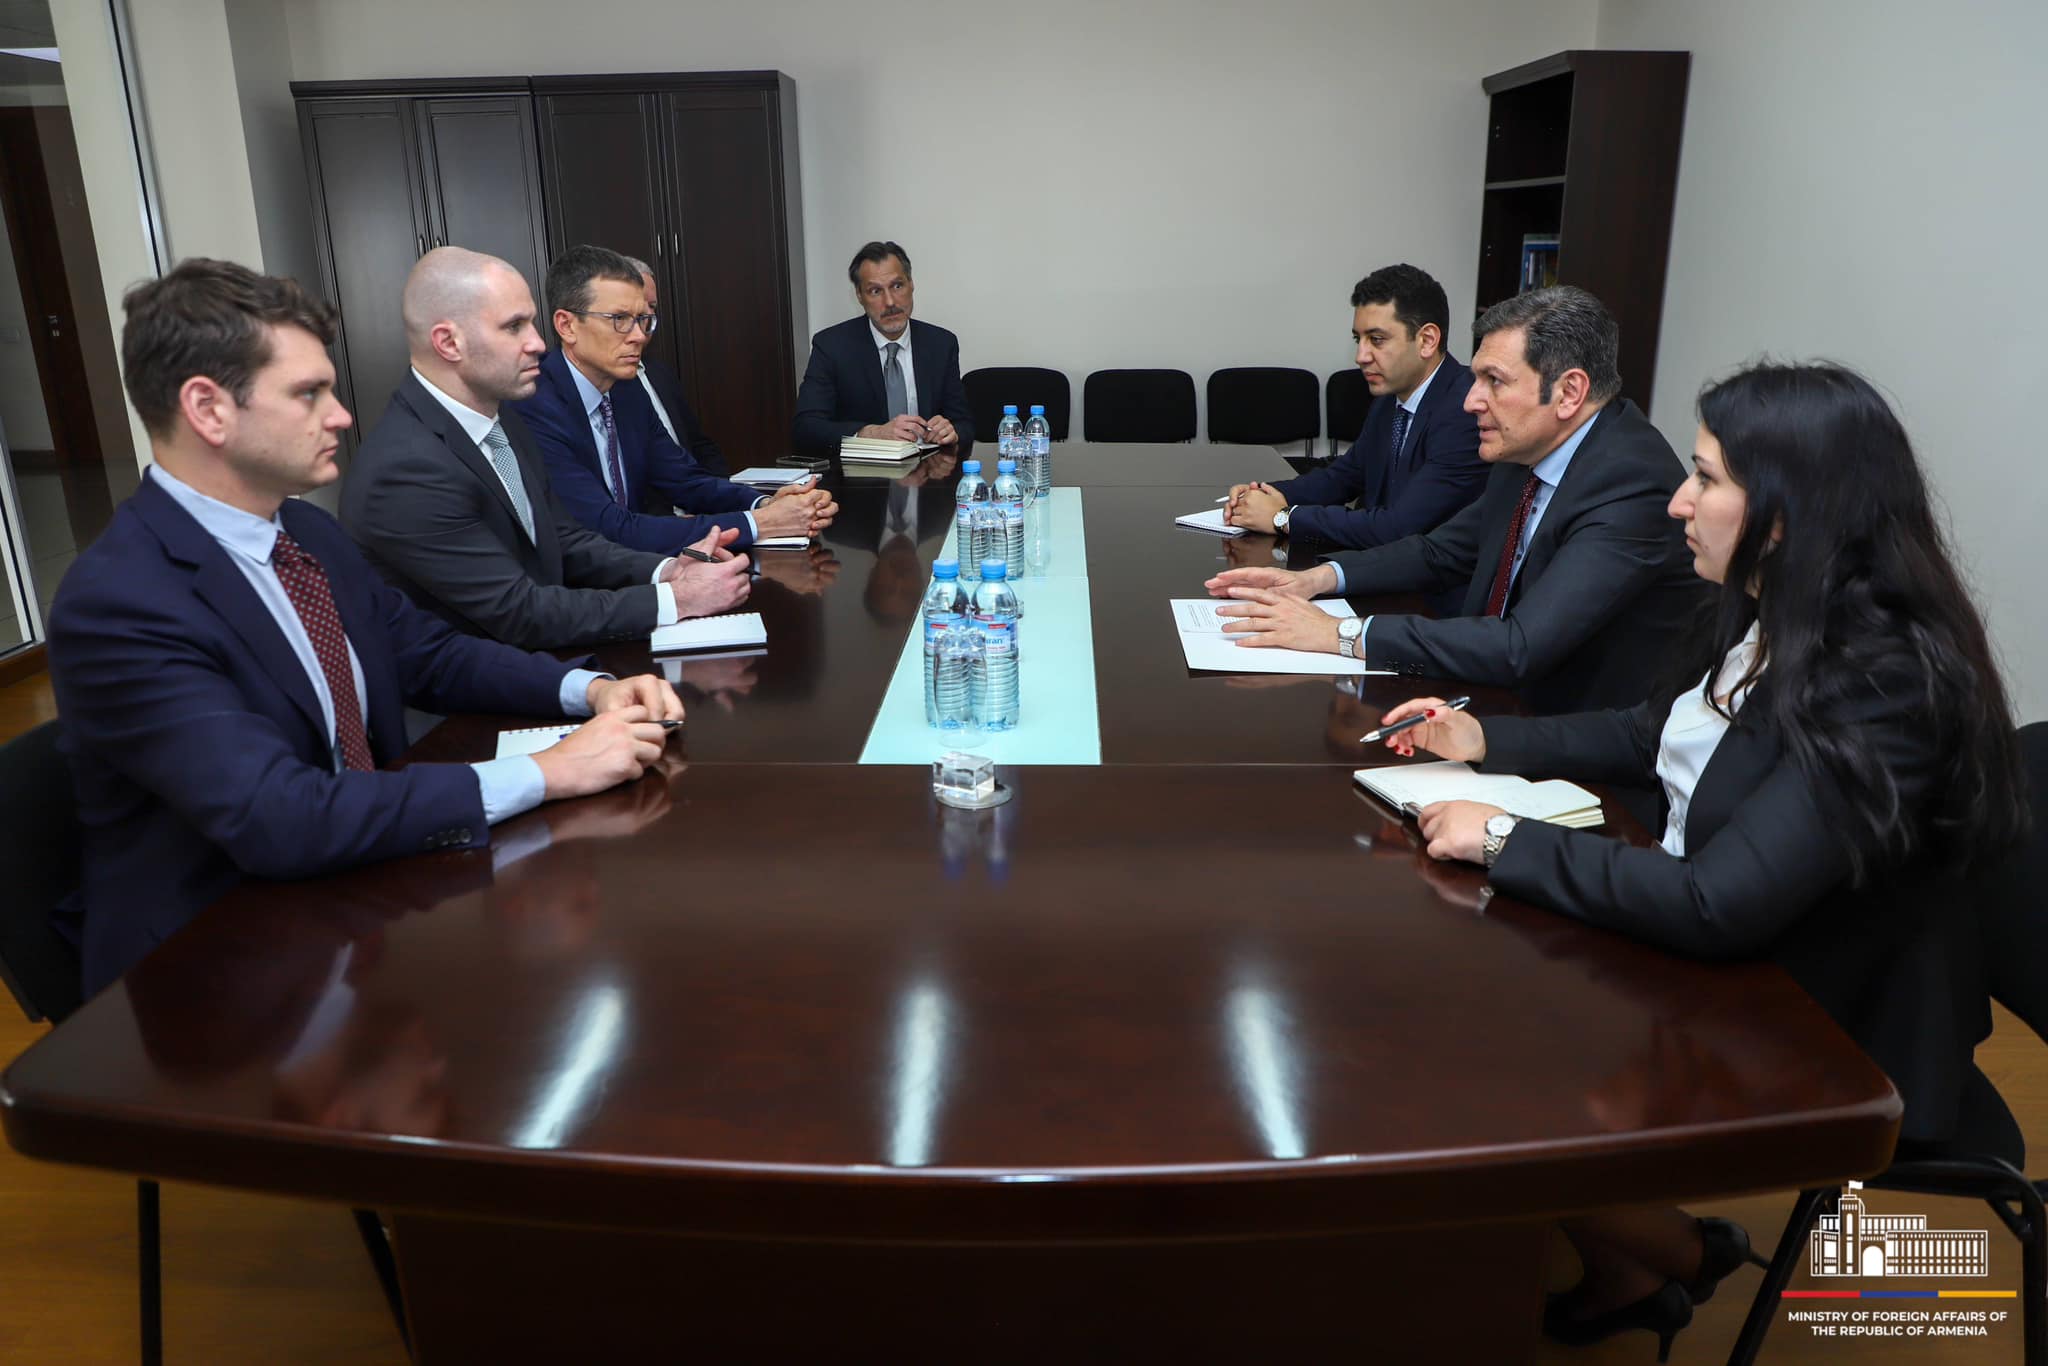 Քննարկվել են ԱՄՆ կողմից Հայաստանին տրամադրվող աջակցությանը վերաբերող հարցեր